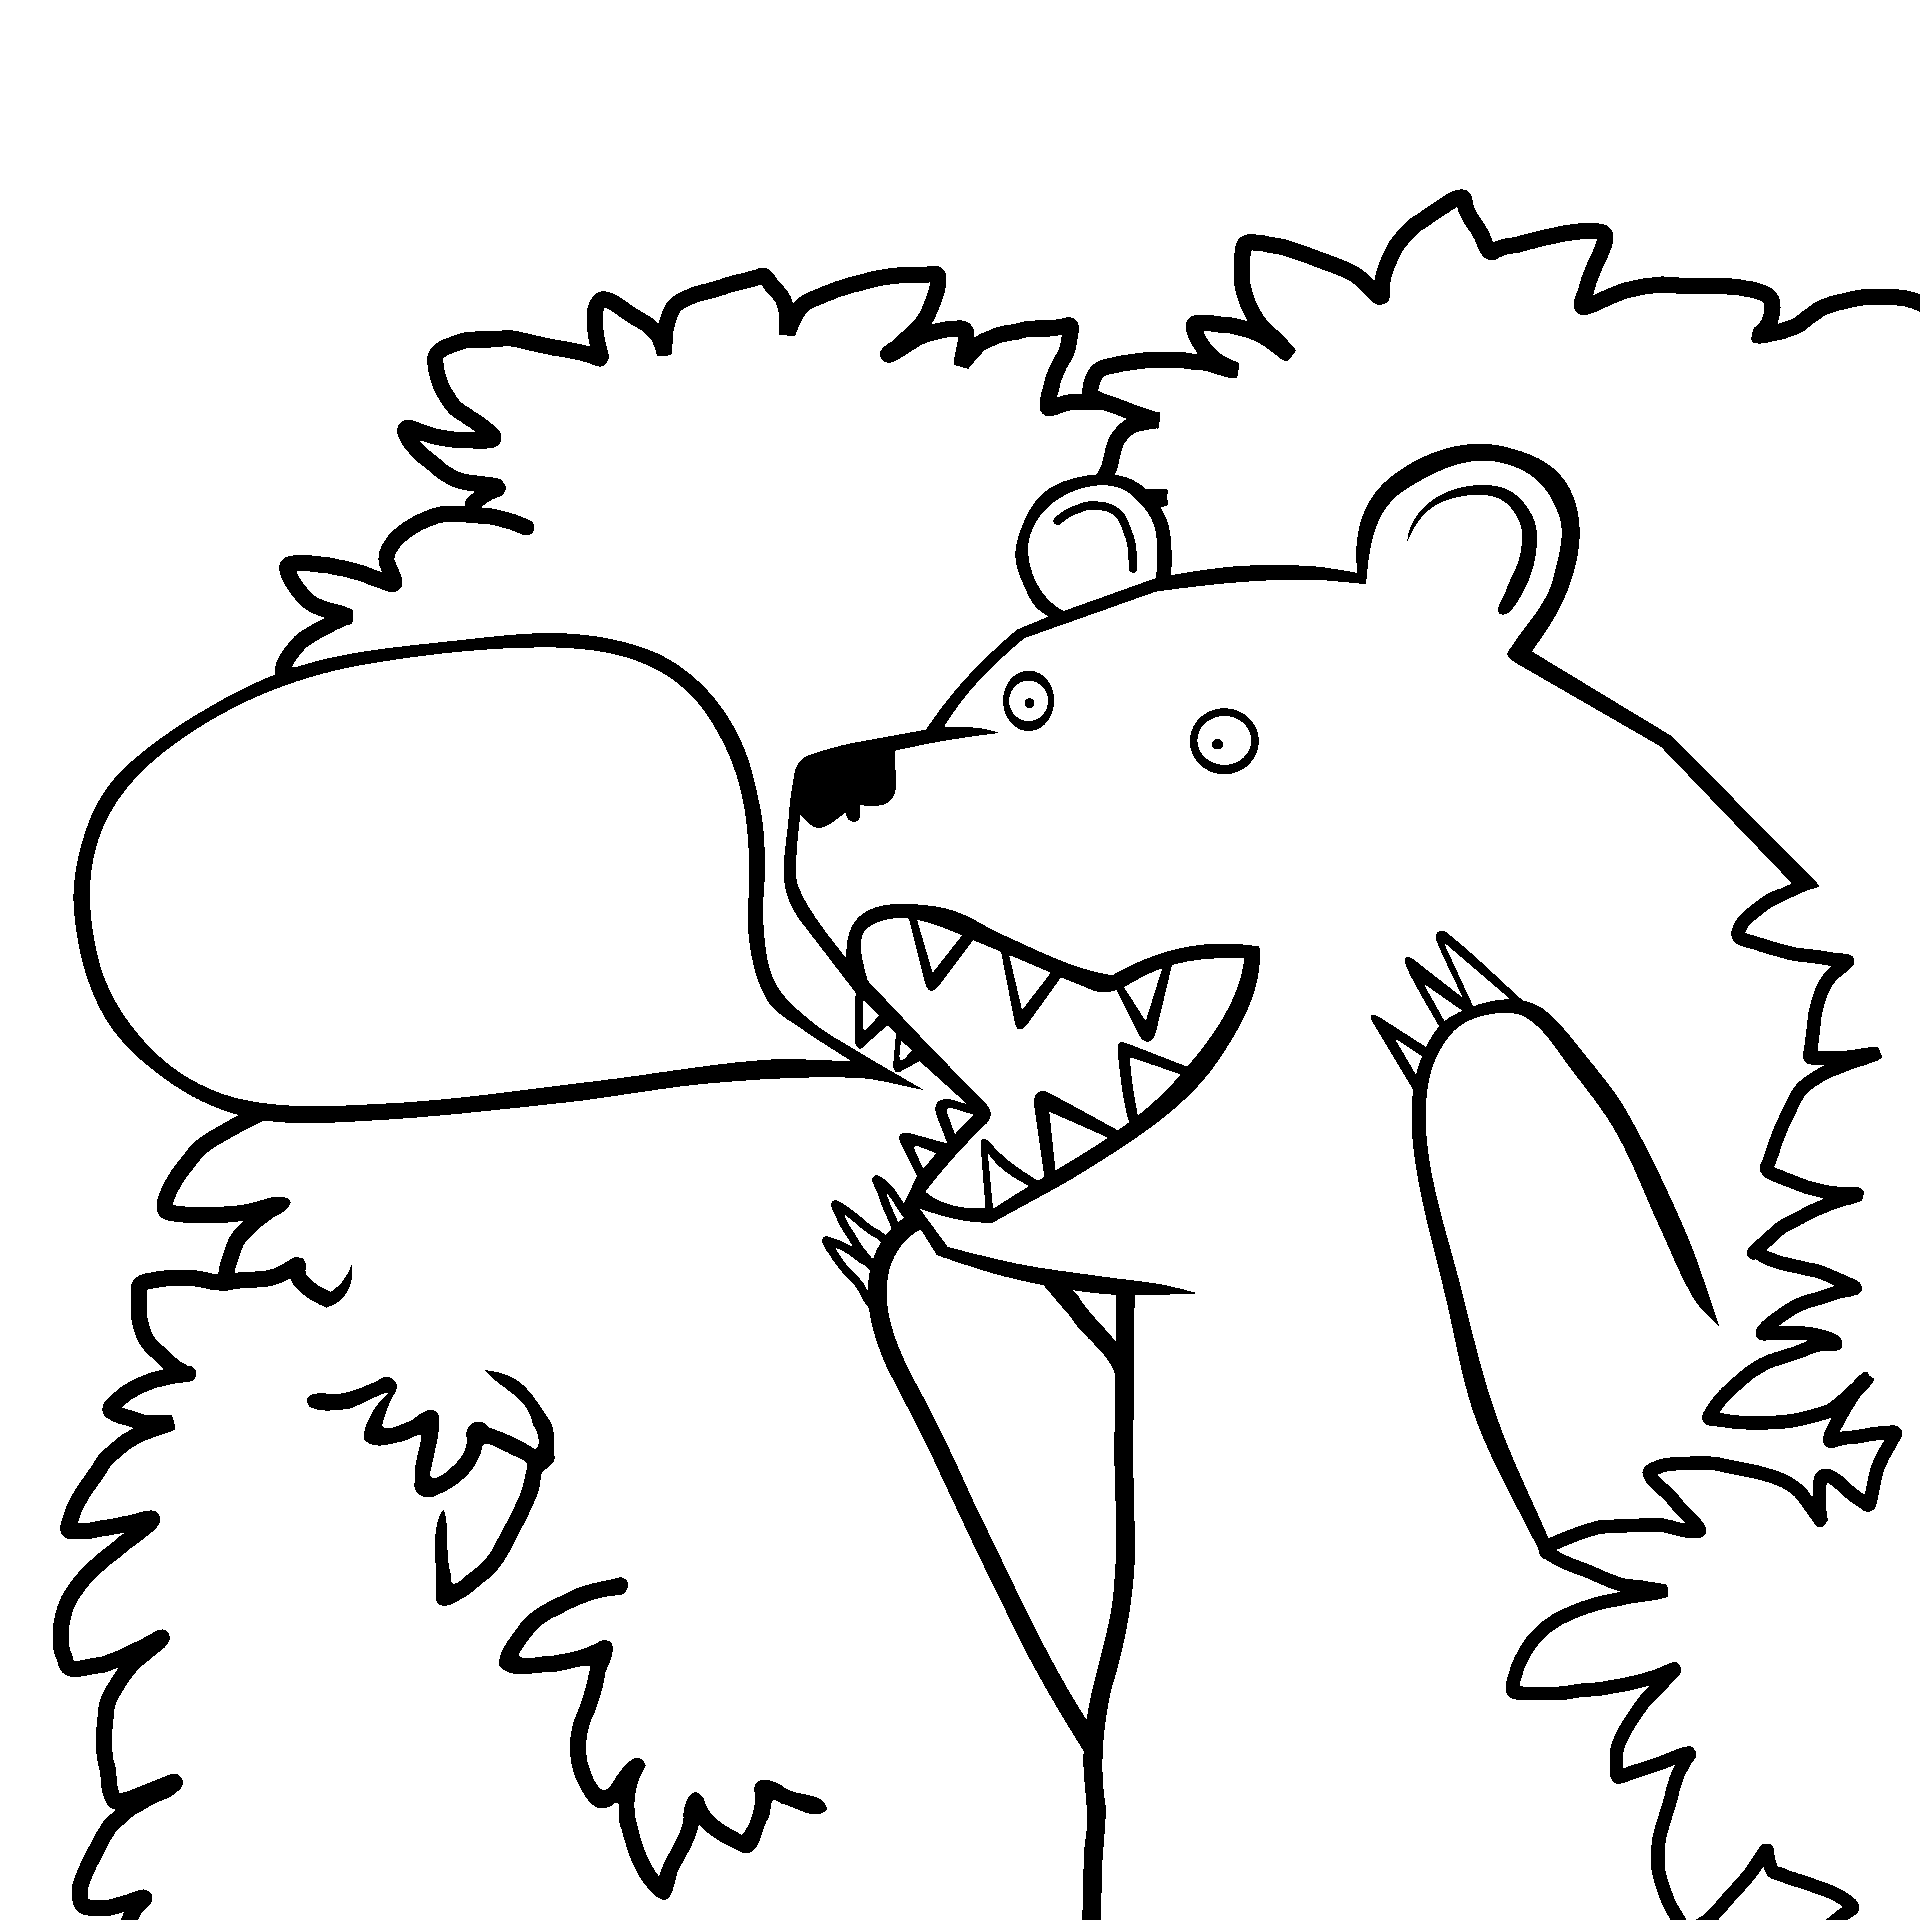 Disegno da colorare di orso chiama con fumetto